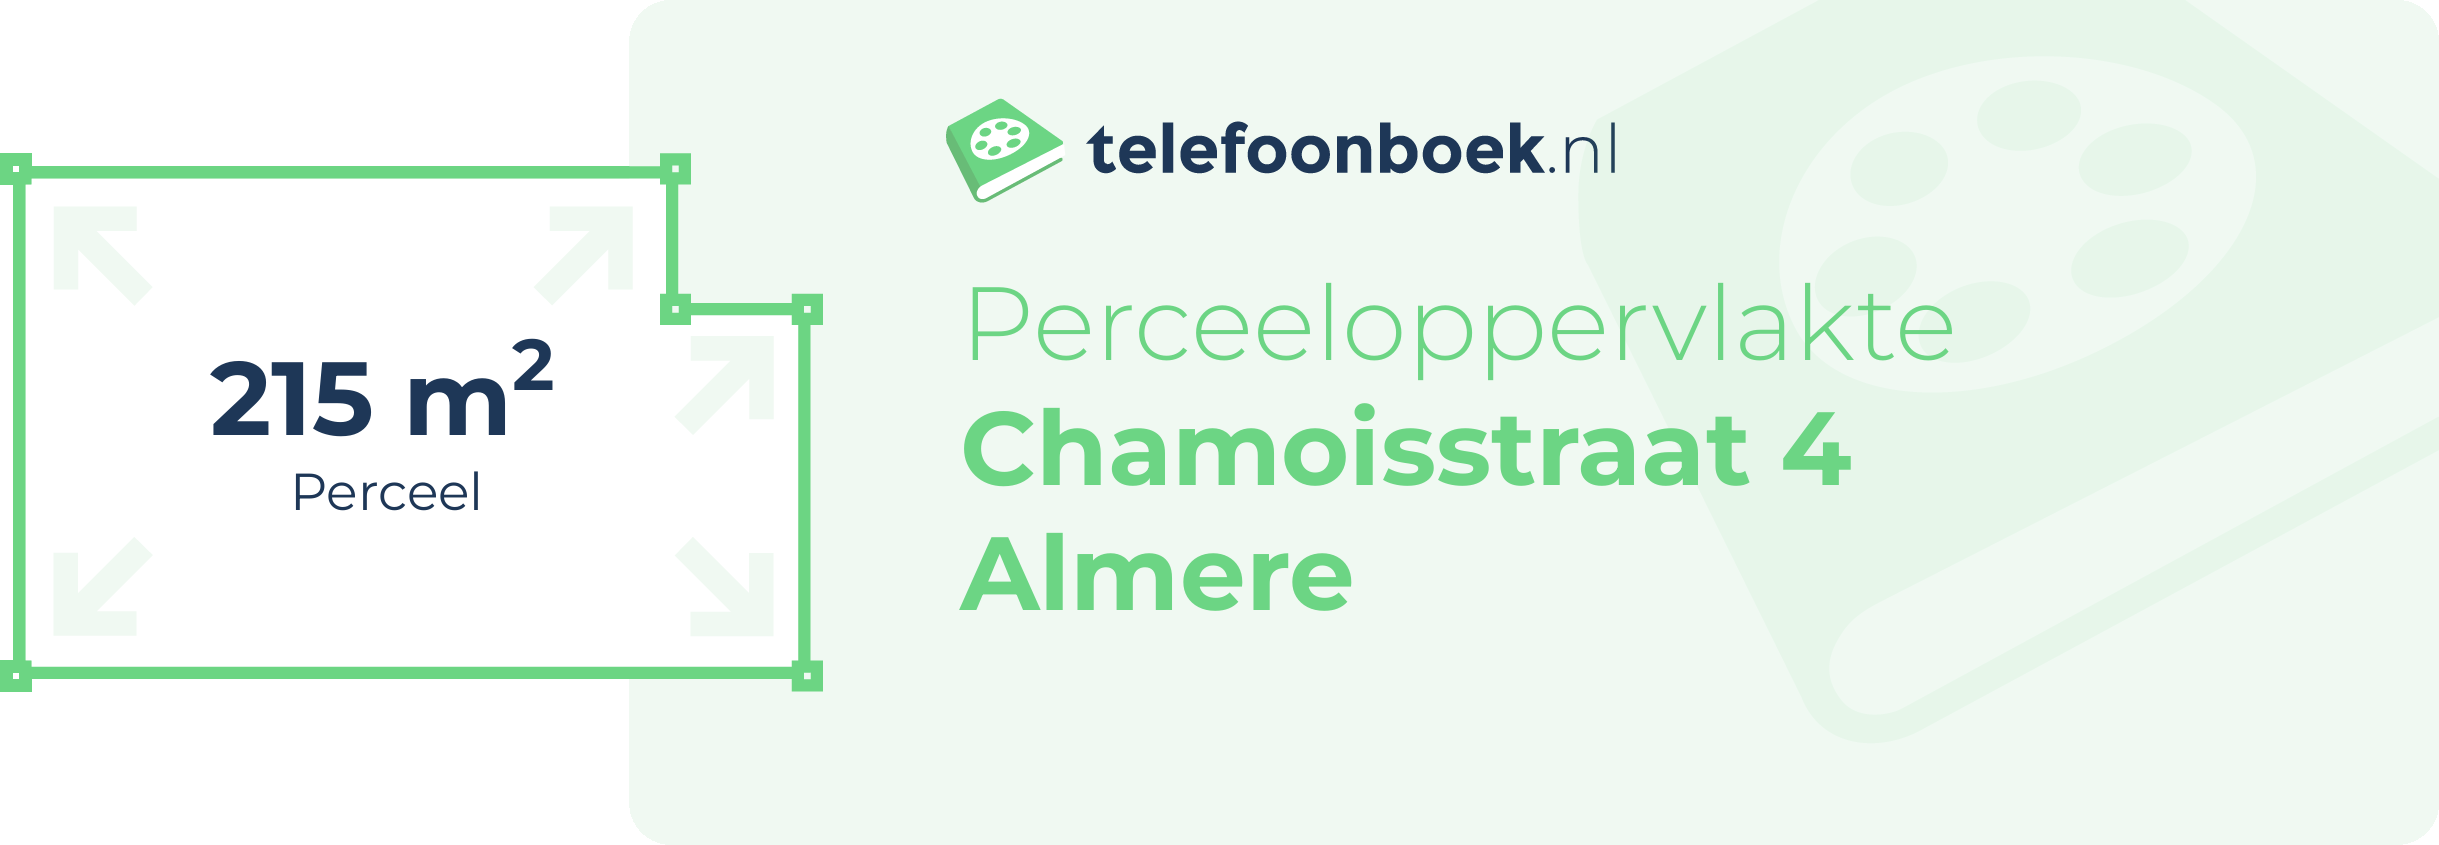 Perceeloppervlakte Chamoisstraat 4 Almere